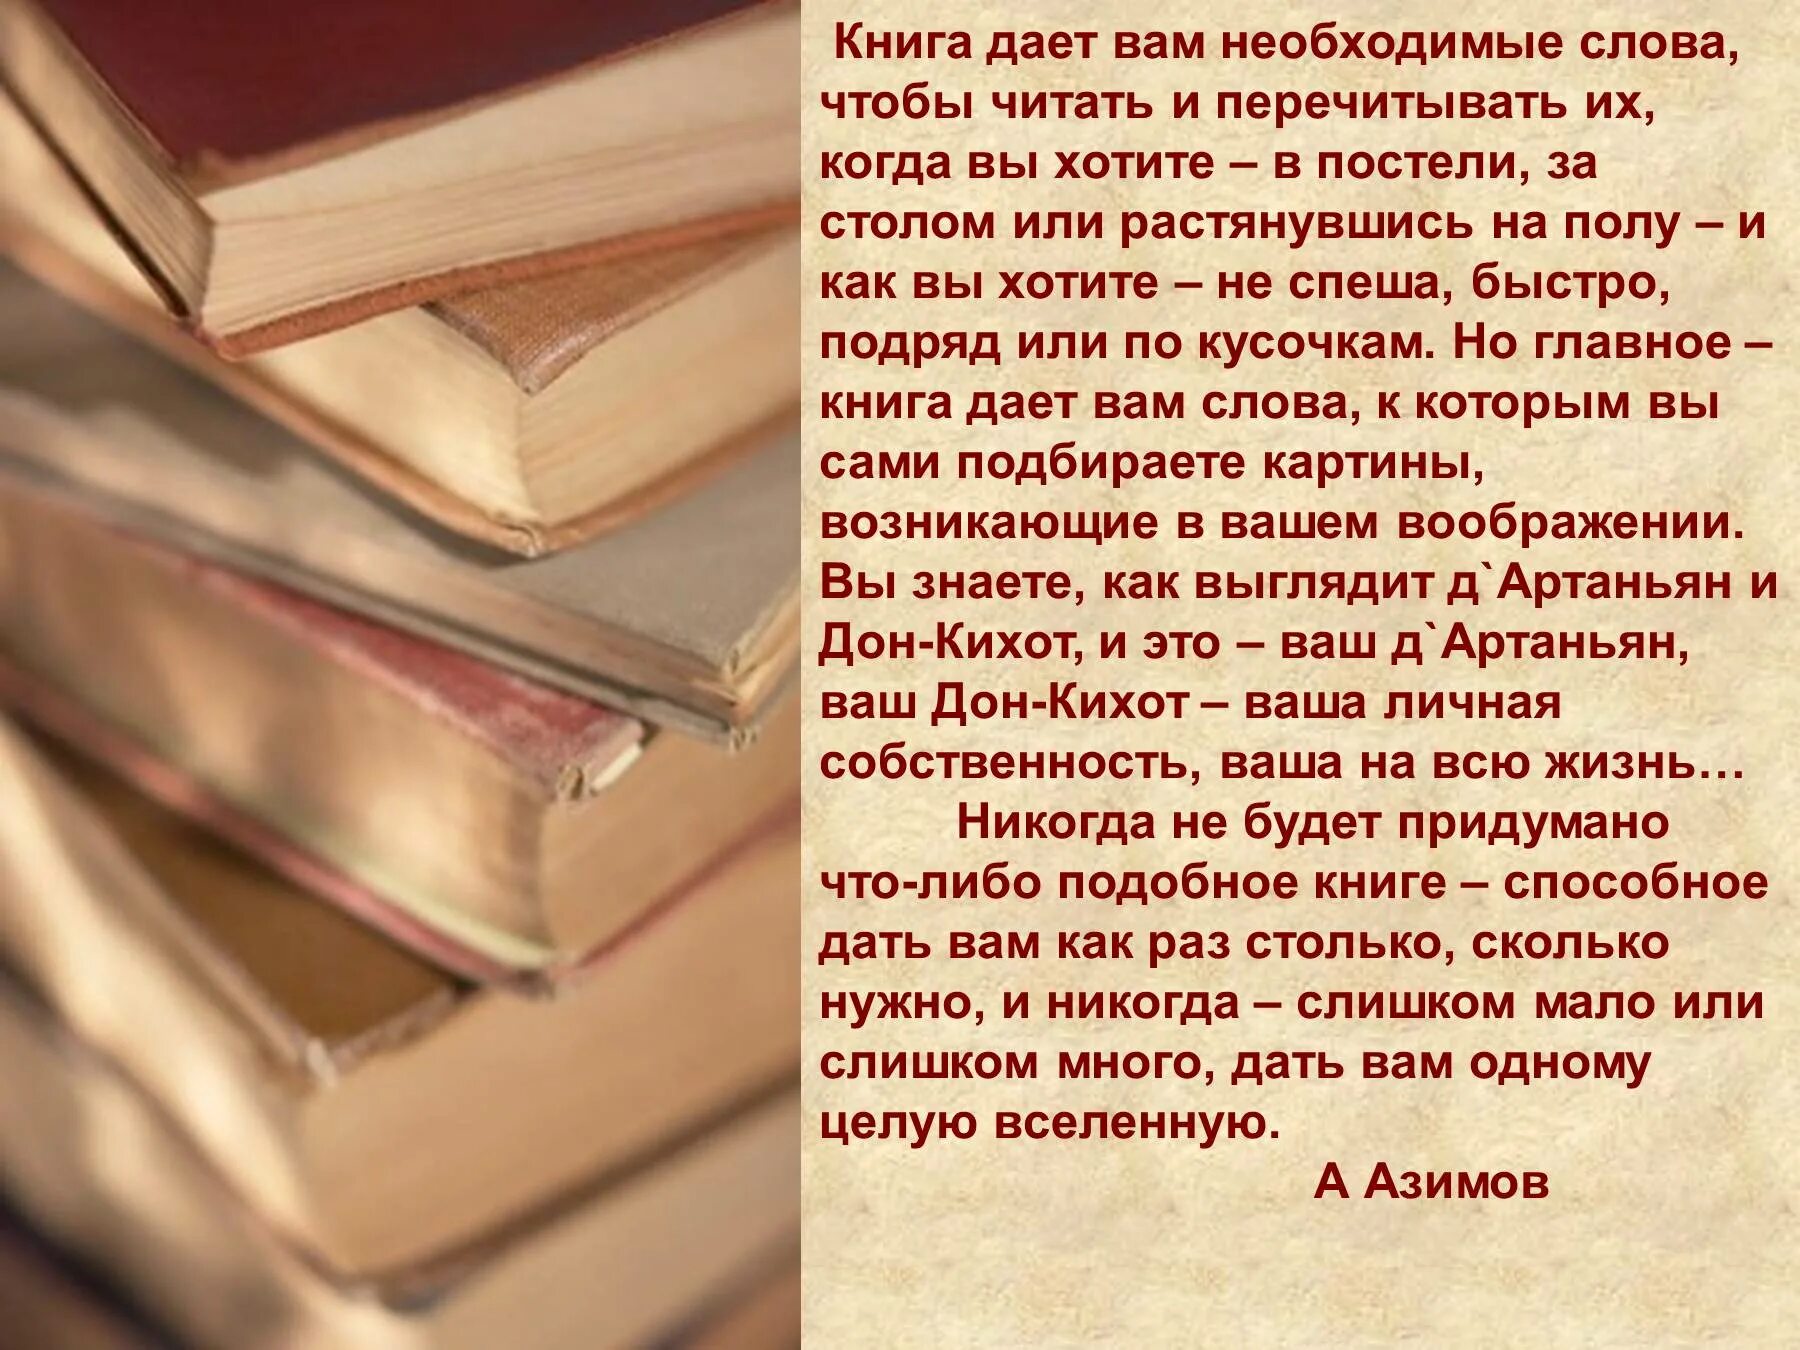 Надо много читать чтобы. Почитать книгу. Читает книгу. Дай книжку почитать. «Книга дает вам необходимые слова.